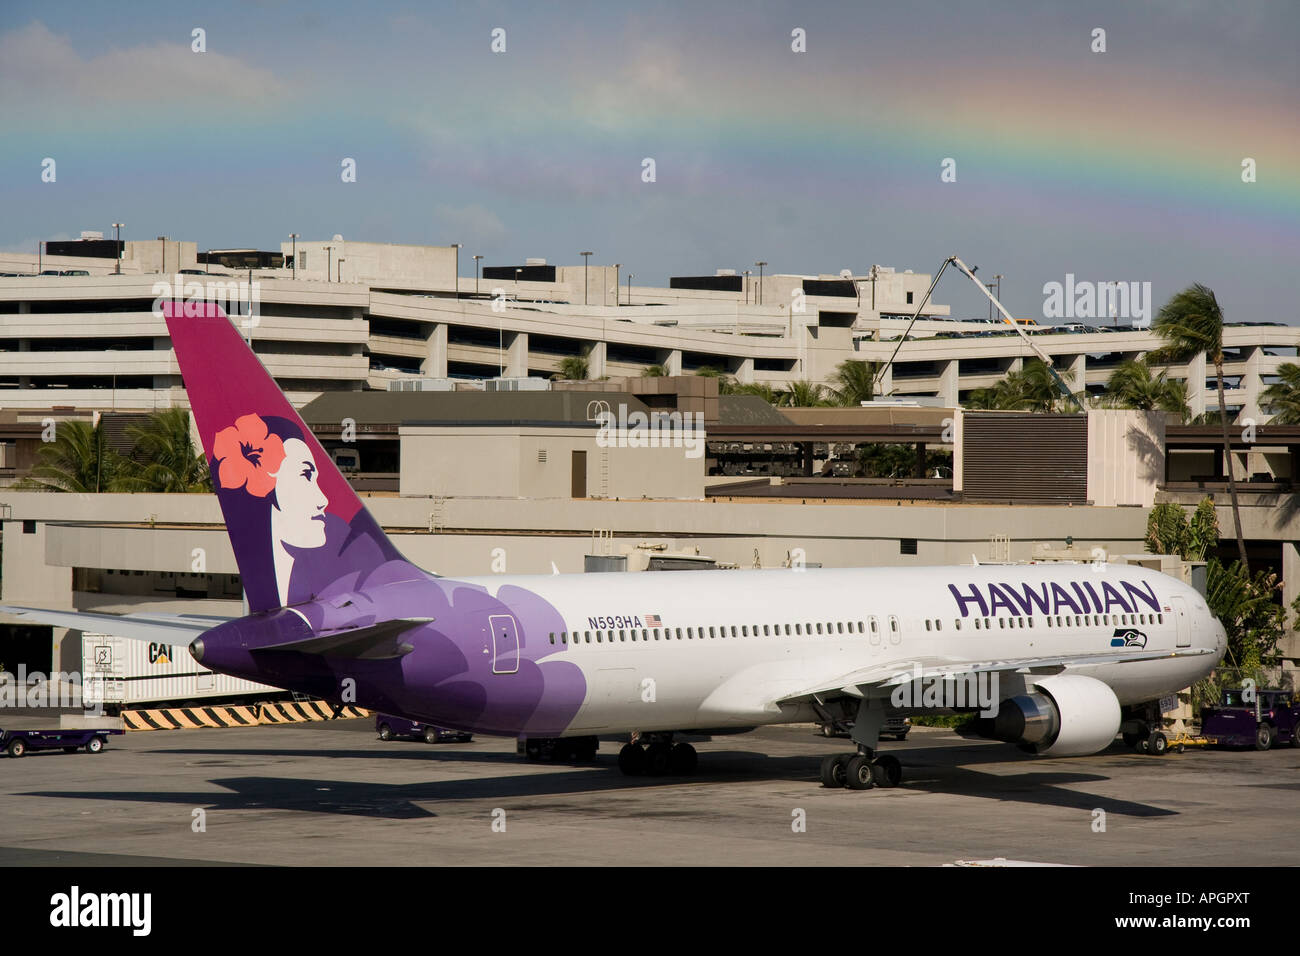 Hawaiian airline avion à l'aéroport avec des arc-en-ciel Banque D'Images